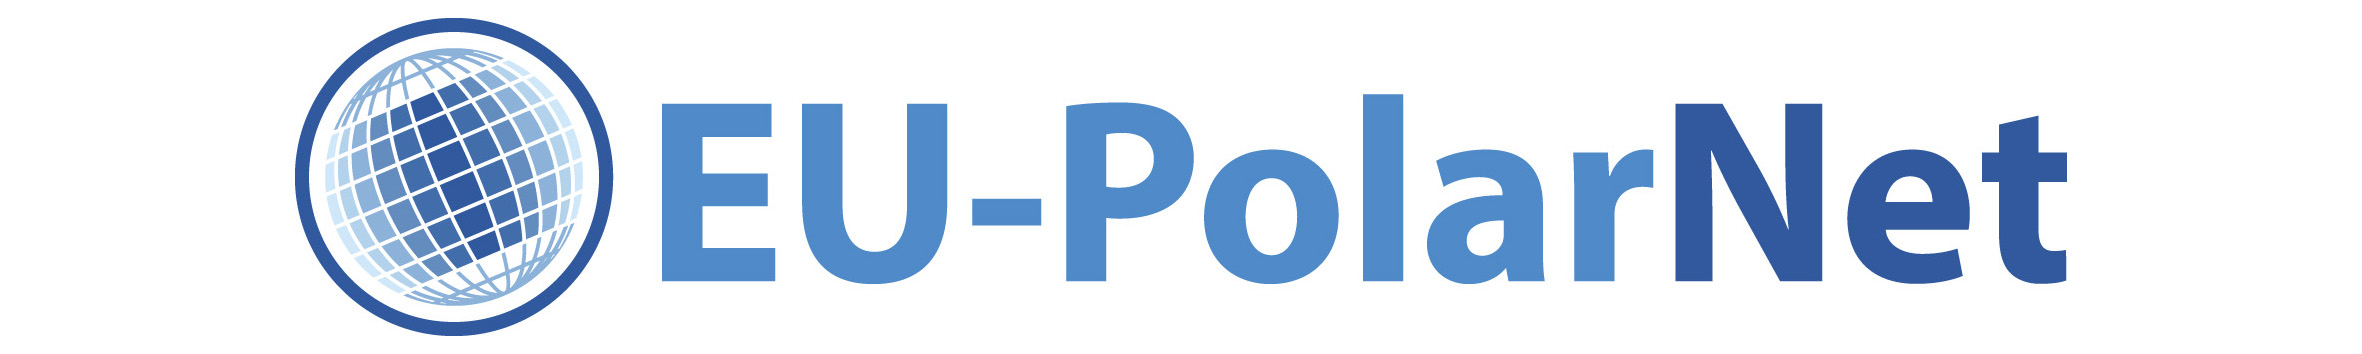 6 2Eu Polarnet logo